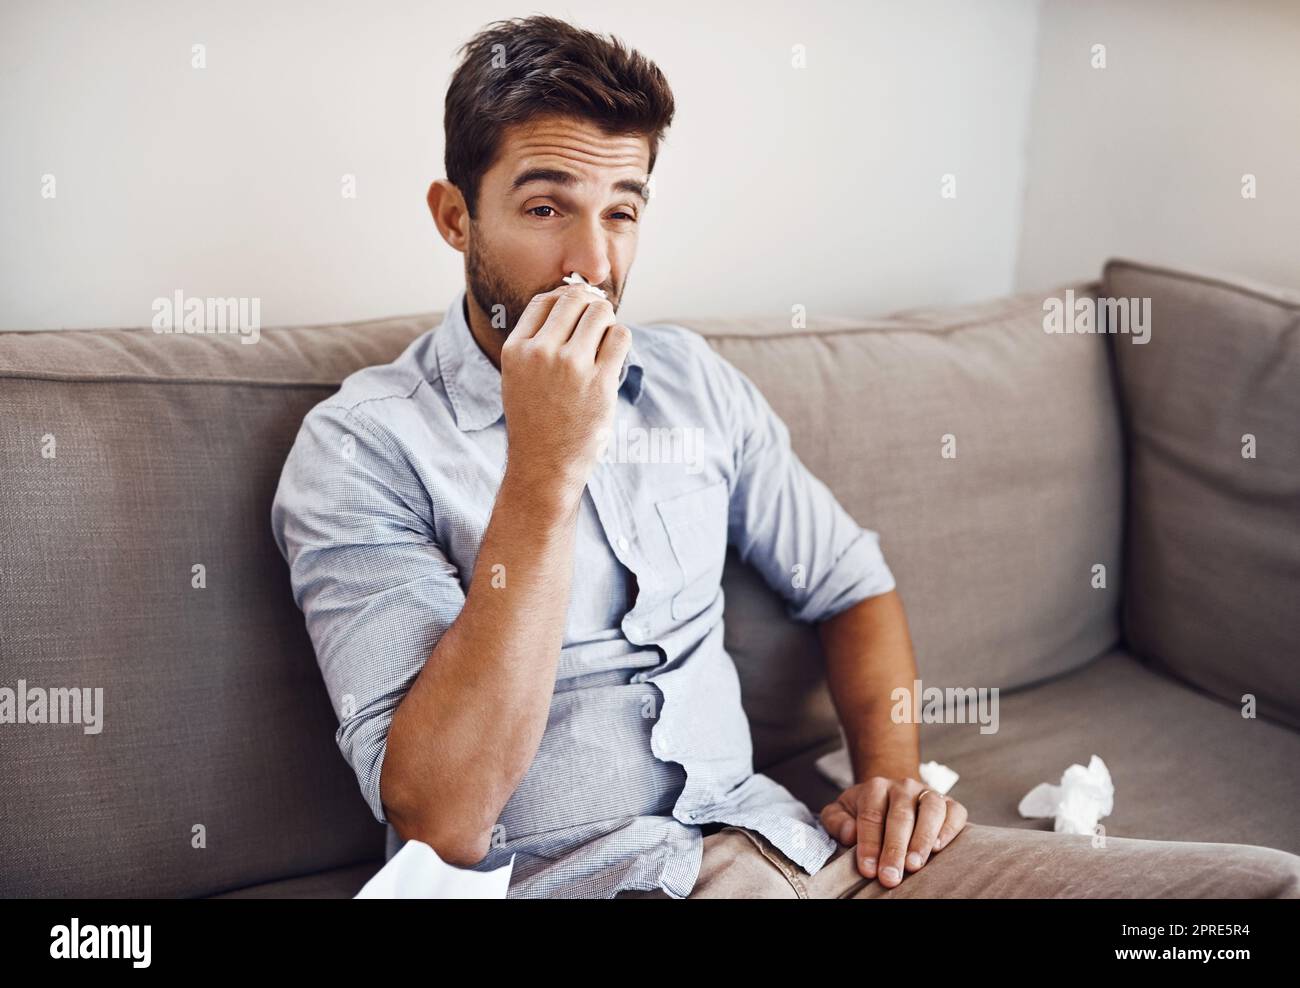 Eine verstopfte Nase zu haben ist so ärgerlich. Ein hübscher junger Mann bläst seine Nase mit einem Gewebe, während er sich auf einem Sofa zu Hause entspannt. Stockfoto